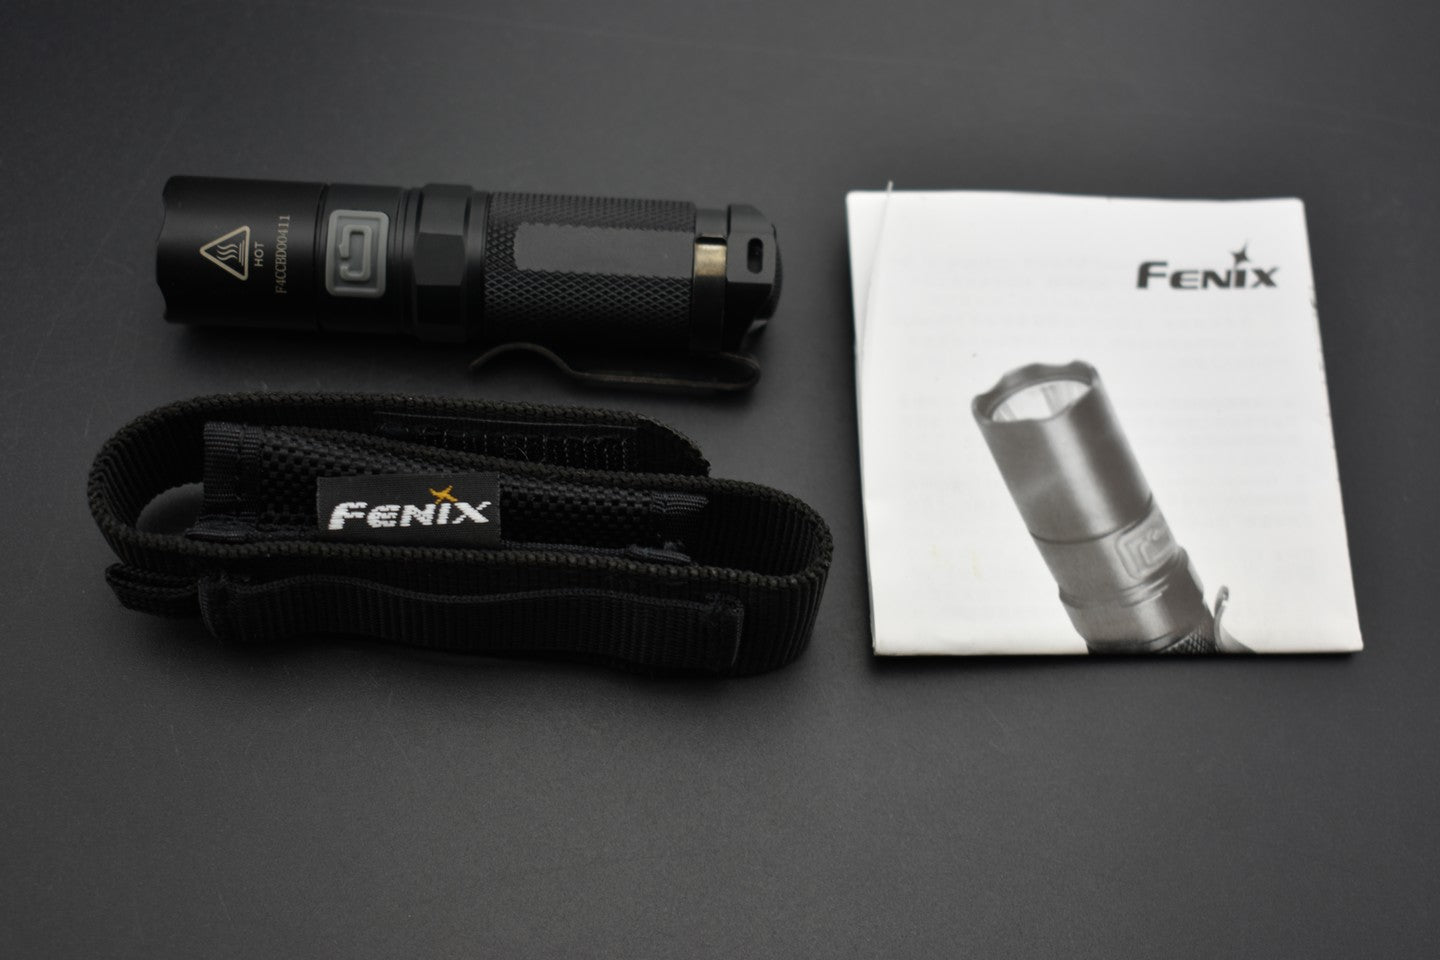 Fenix occasion - OCF237 PD22 - Revendeur Officiel Lampes FENIX depuis 2008 | Votre Boutique en ligne FENIX®